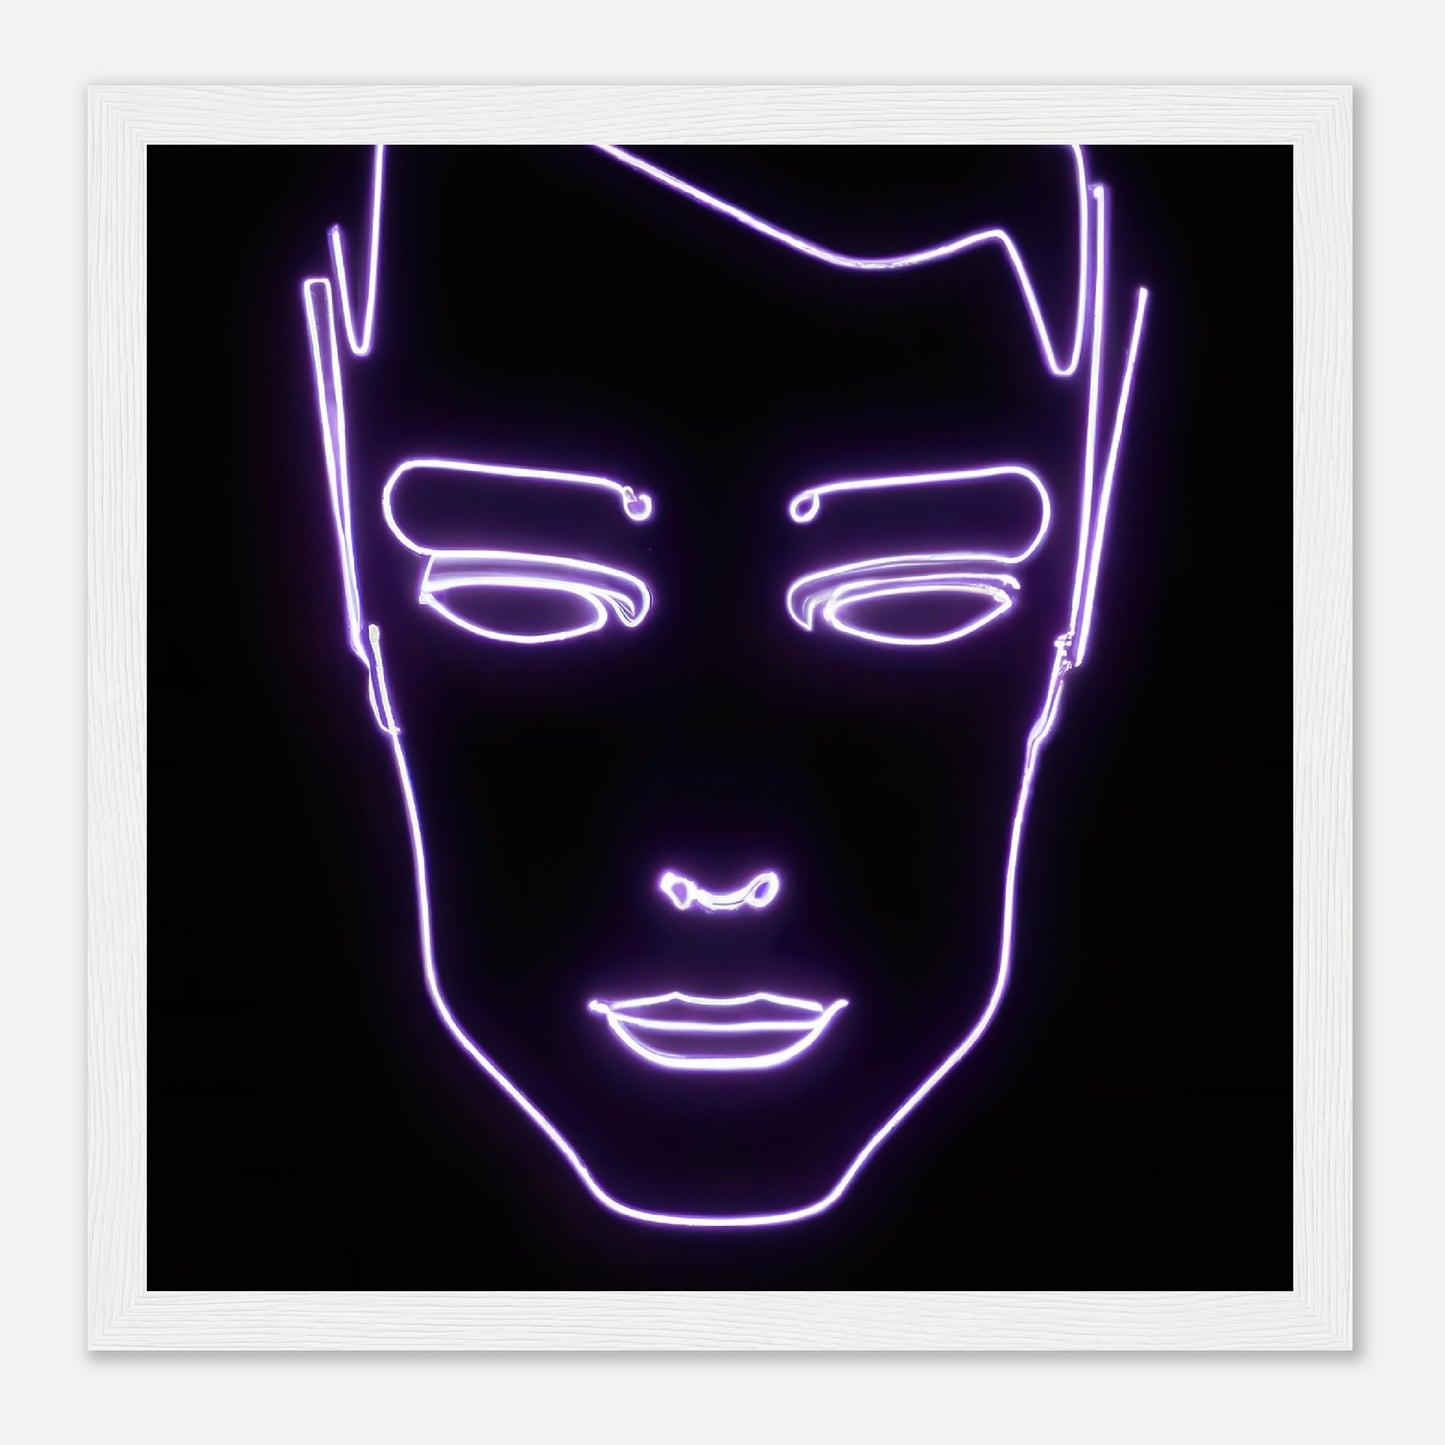 Gerahmtes Premium-Poster - Männliches Gesicht - Neon Stil, KI-Kunst - RolConArt, Neon, 30x30-cm-12x12-Weiß